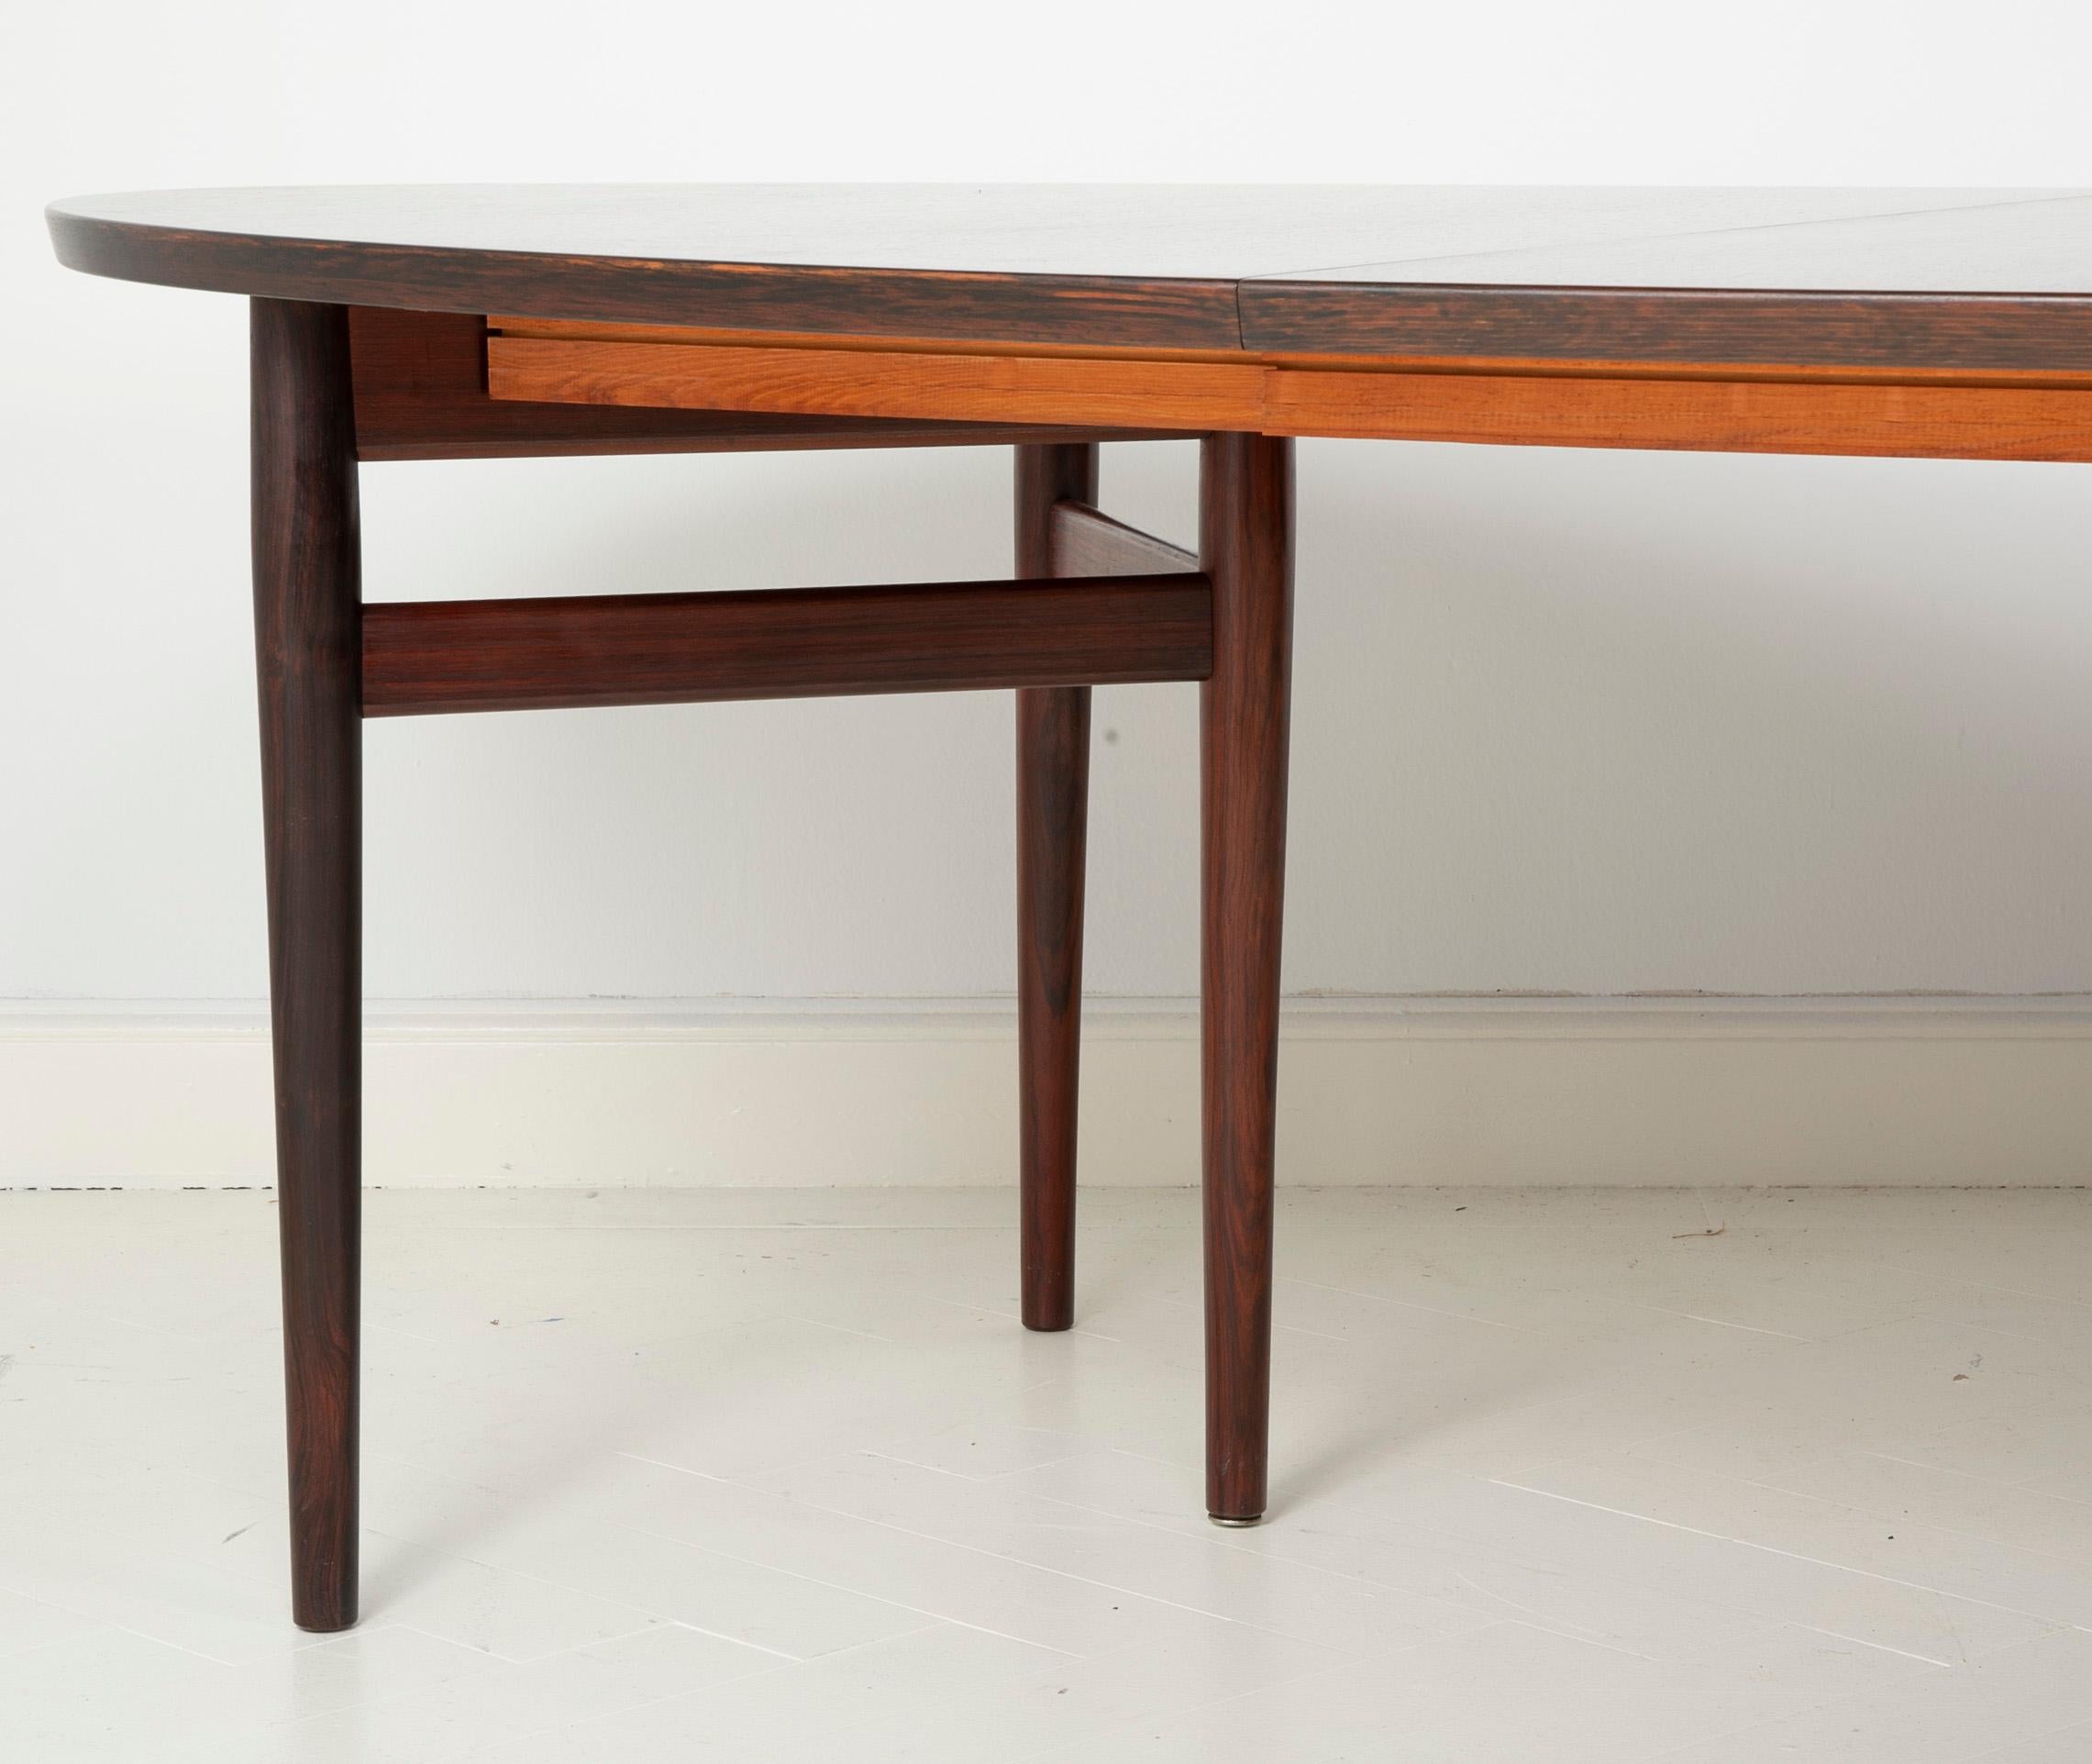 Danish Rosewood Dining Table Designed by Arne Vodder for Sibast Furniture